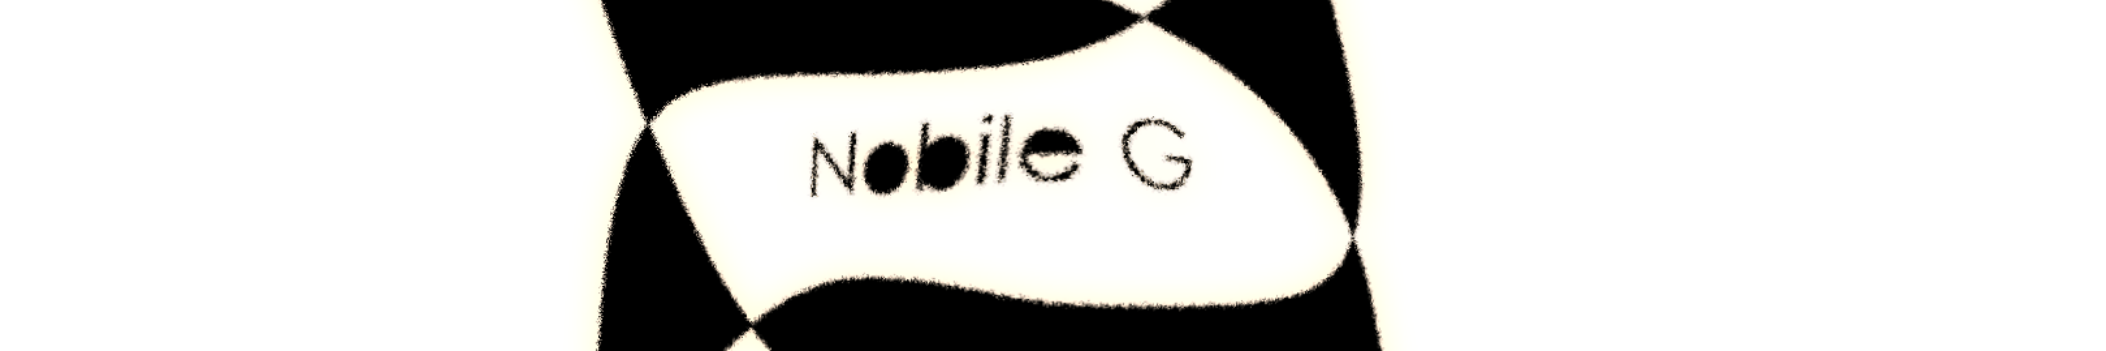 Nobile G